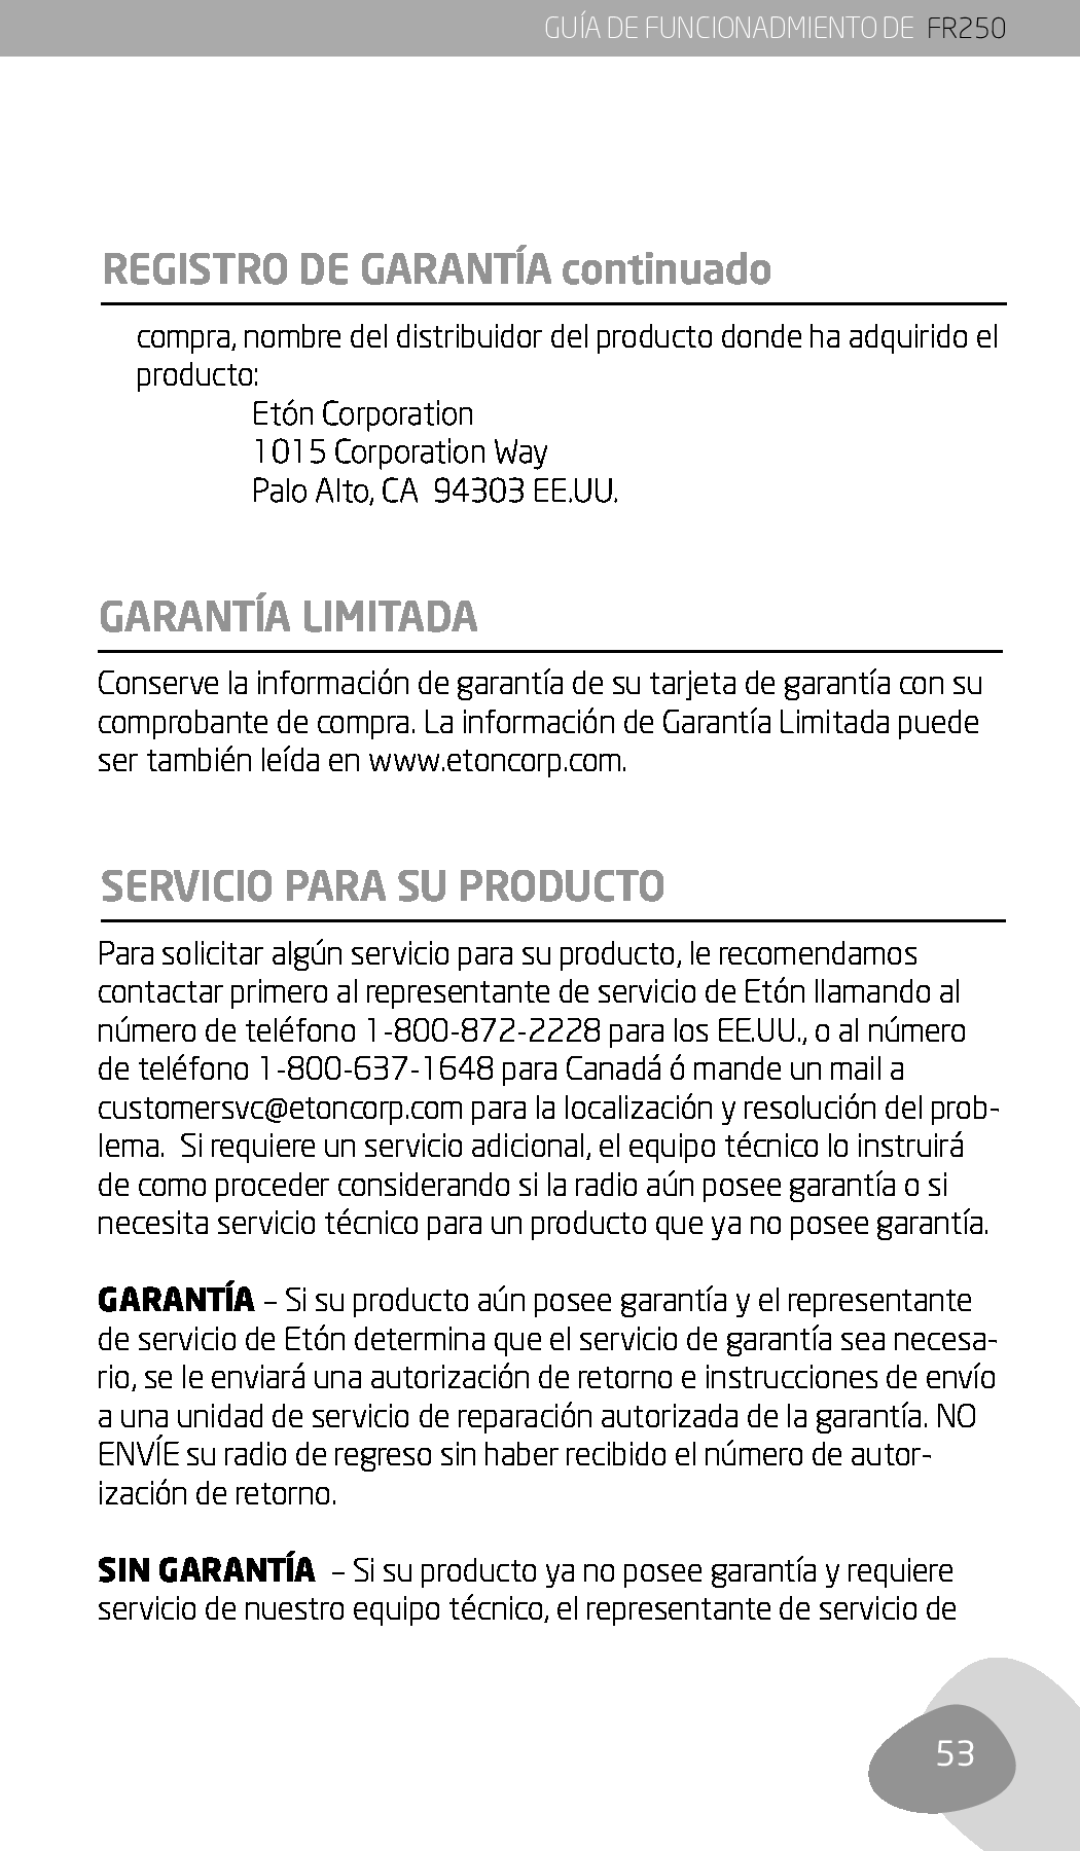 Eton FR250 REGISTRO DE GARANTÍA continuado, Garantía Limitada, Servicio Para Su Producto, Palo Alto, CA 94303 EE.UU 